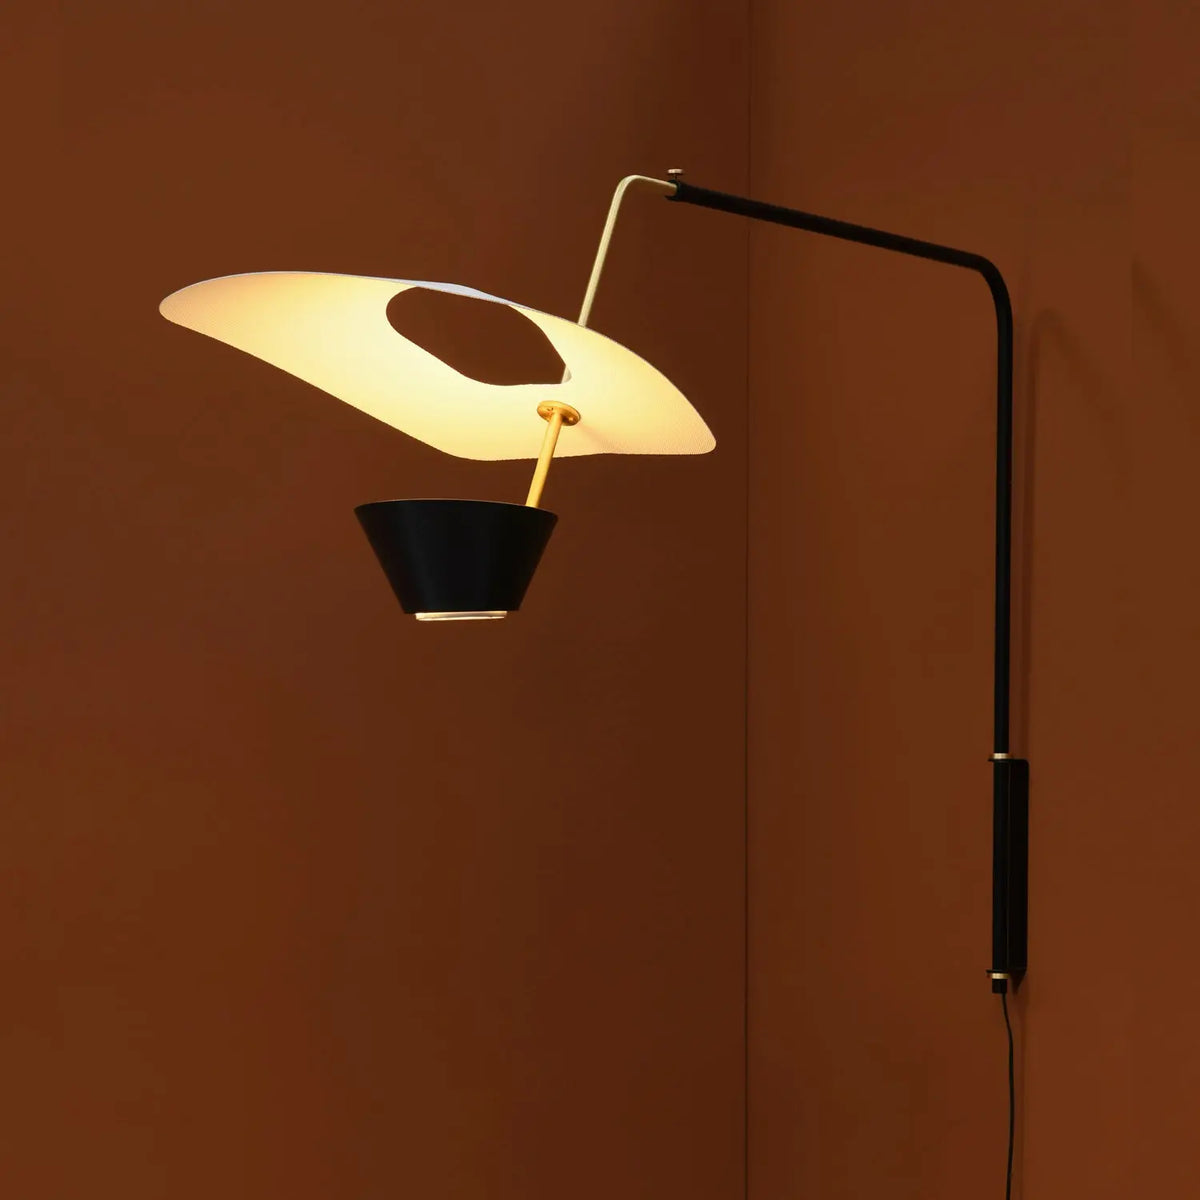 Pierre Guaricheがデザインした、Sammode Studio G25 Wall Light ピエールガーリッシュデザインのウォールライト